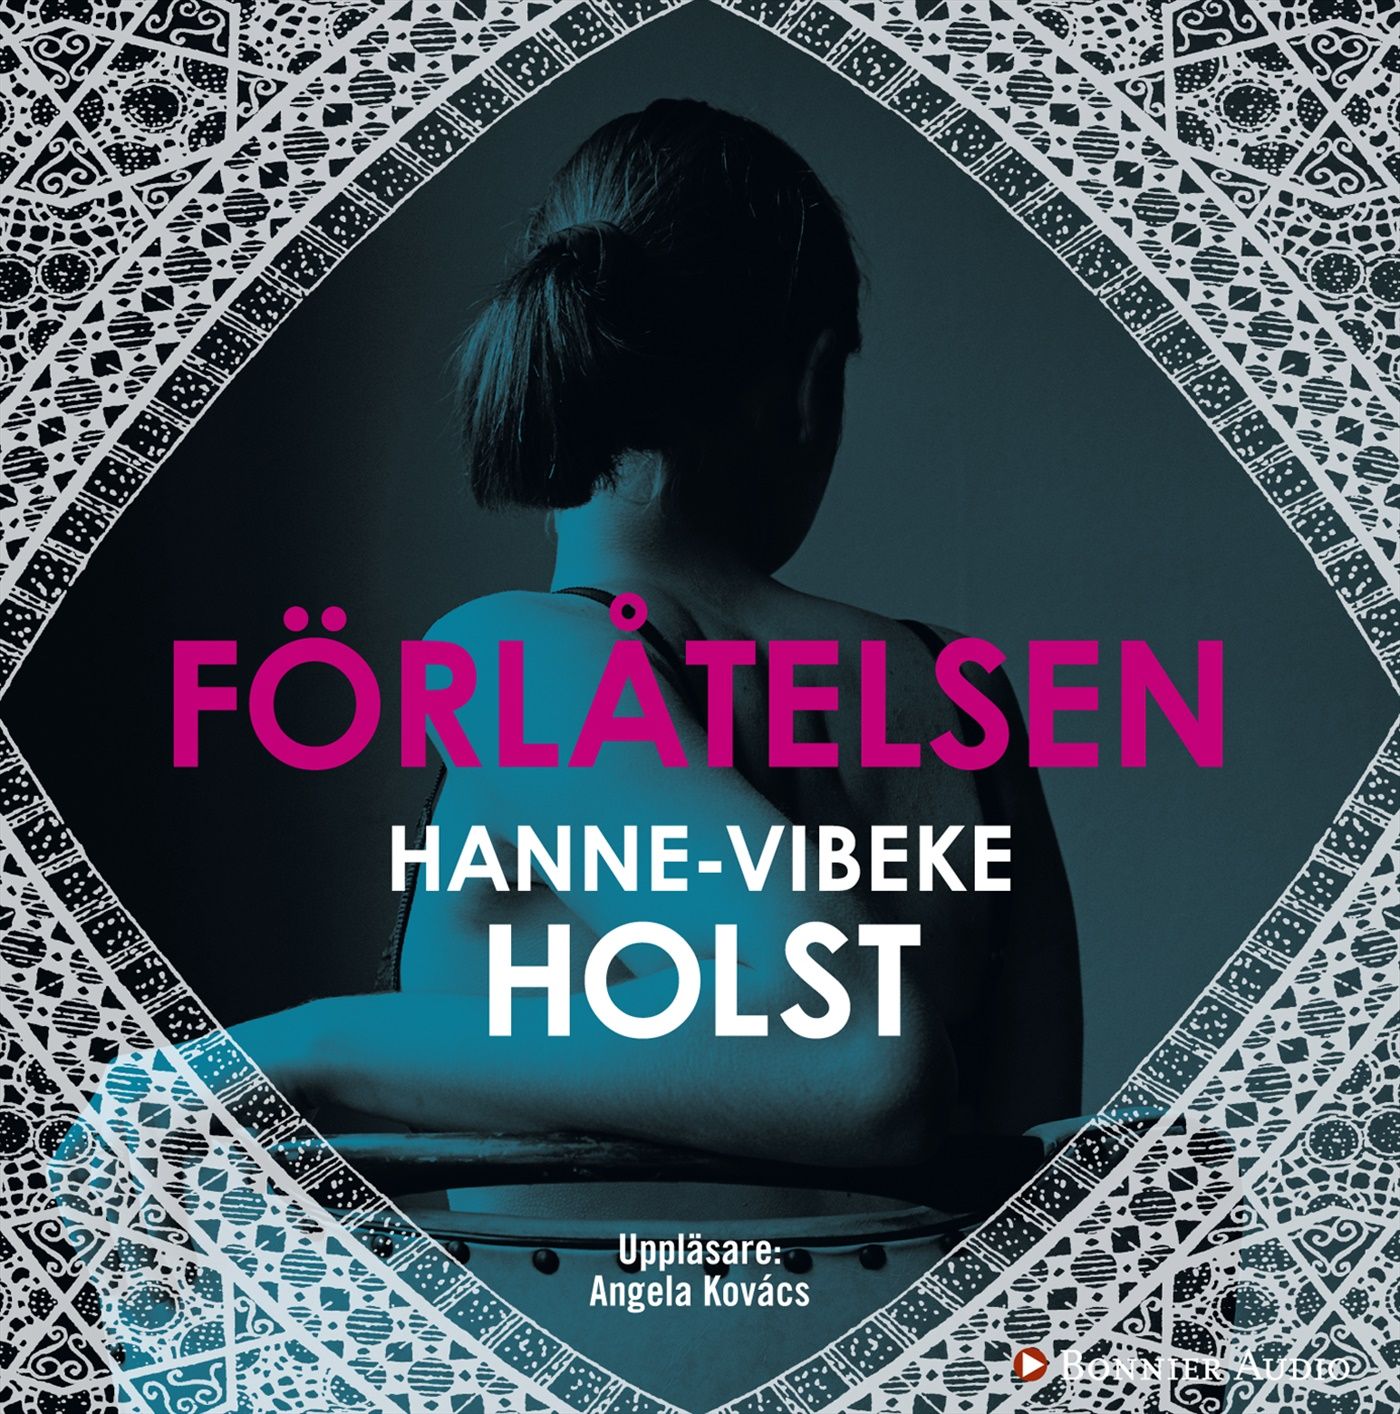 Förlåtelsen, ljudbok av Hanne-Vibeke Holst